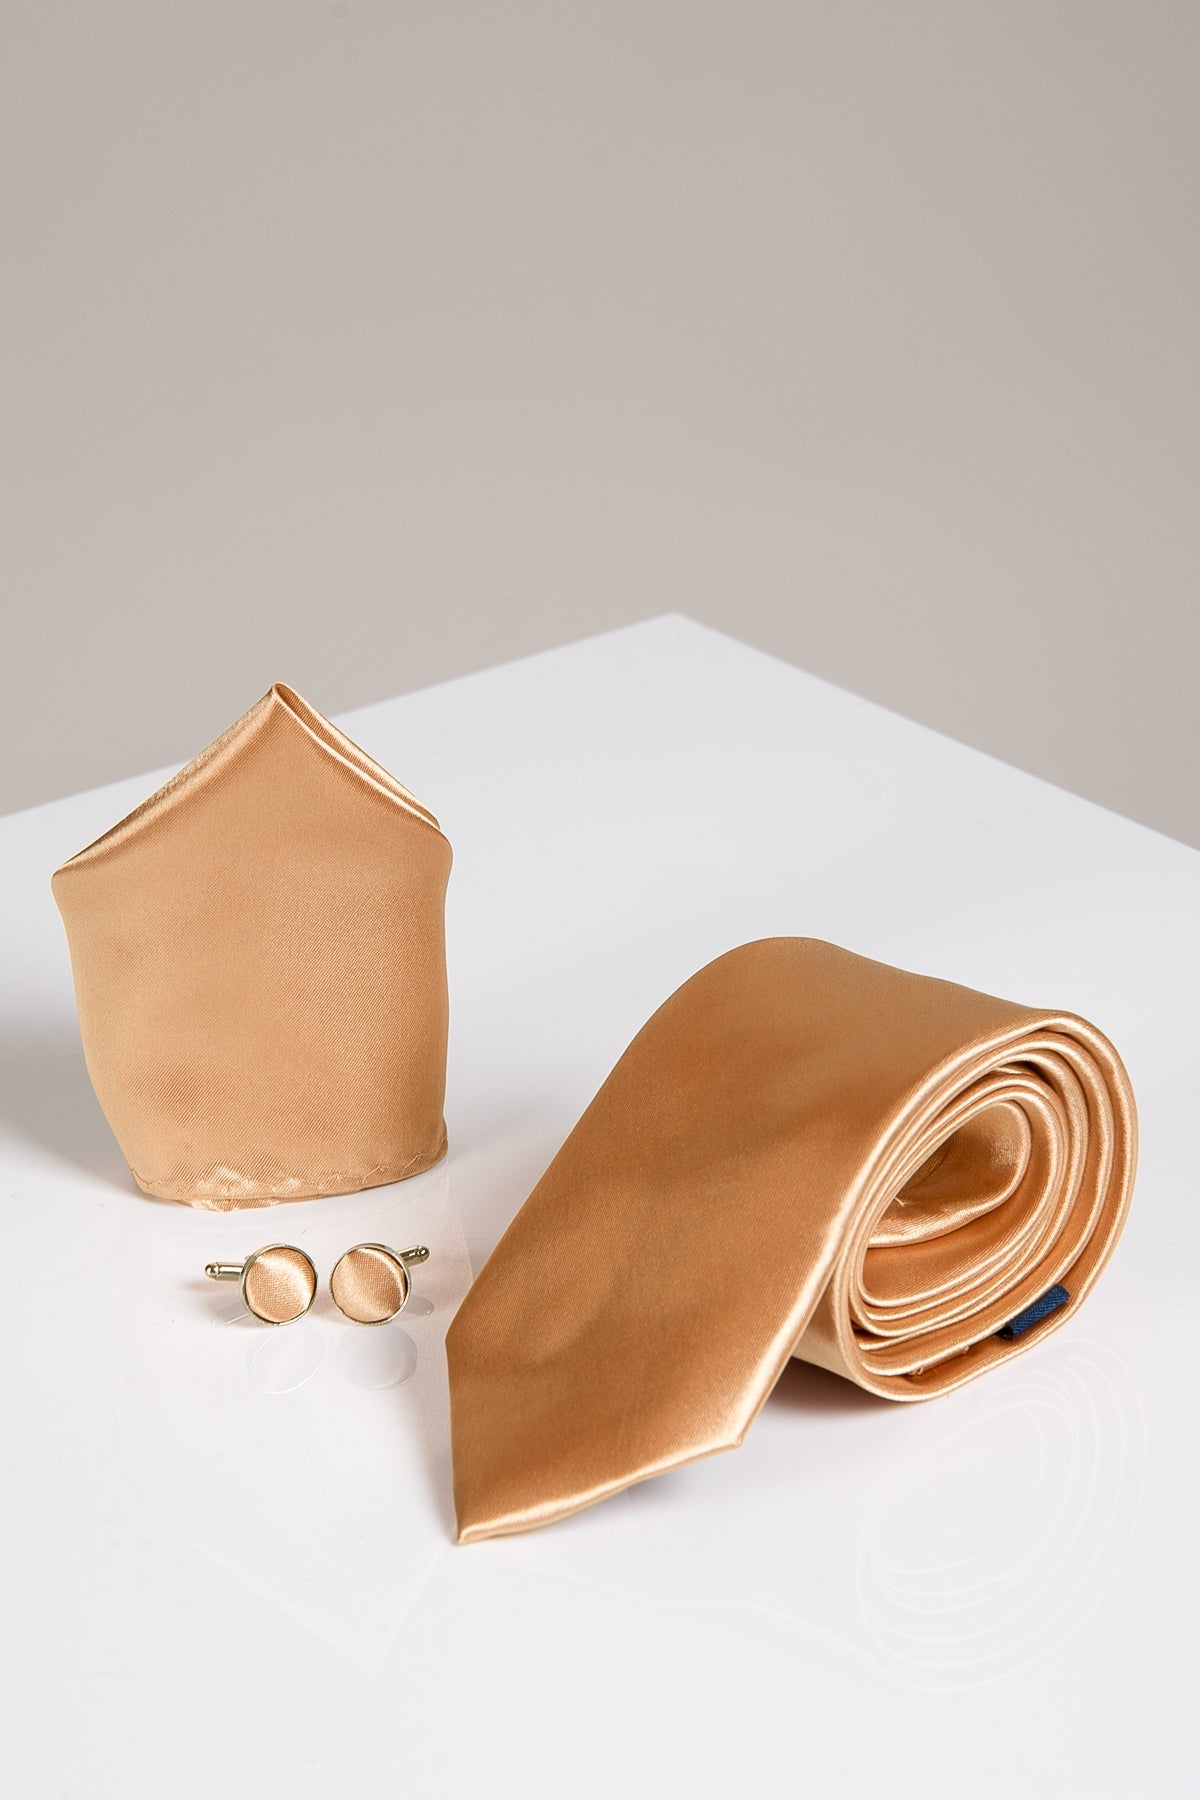 STANLEY - Satin Tie, Cufflink & Pocket Square Set In Gold